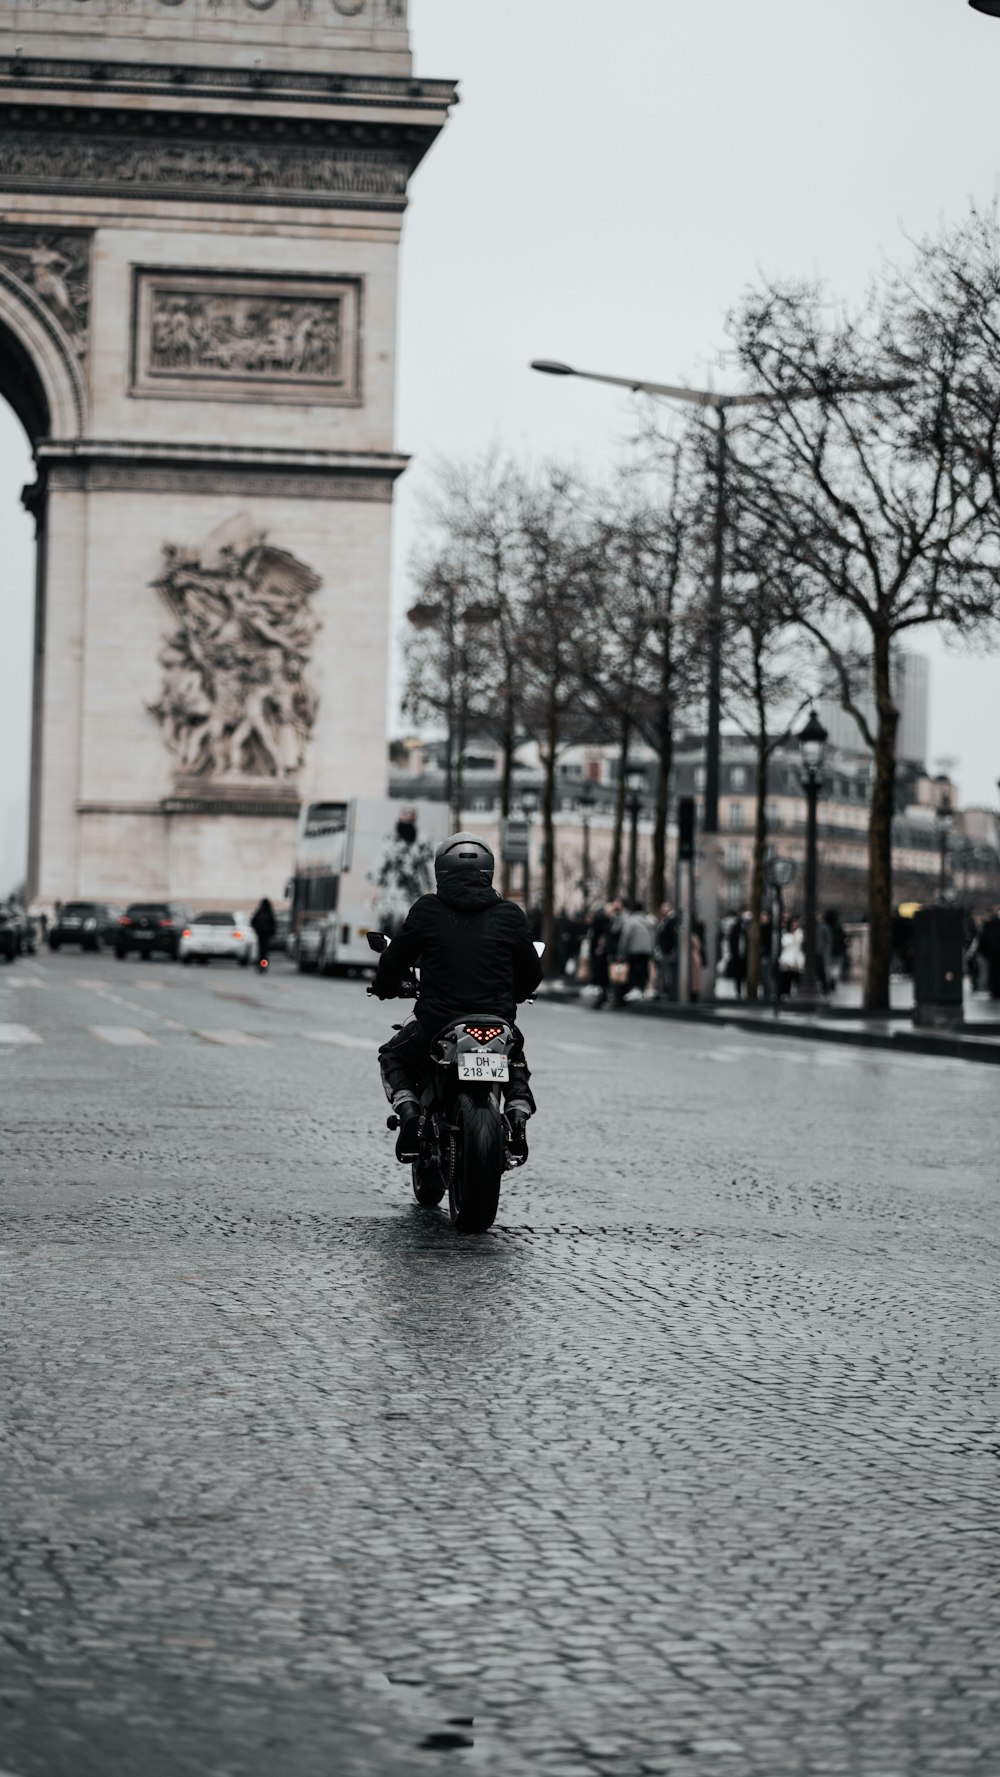 Un homme conduisant une moto dans une rue pavée